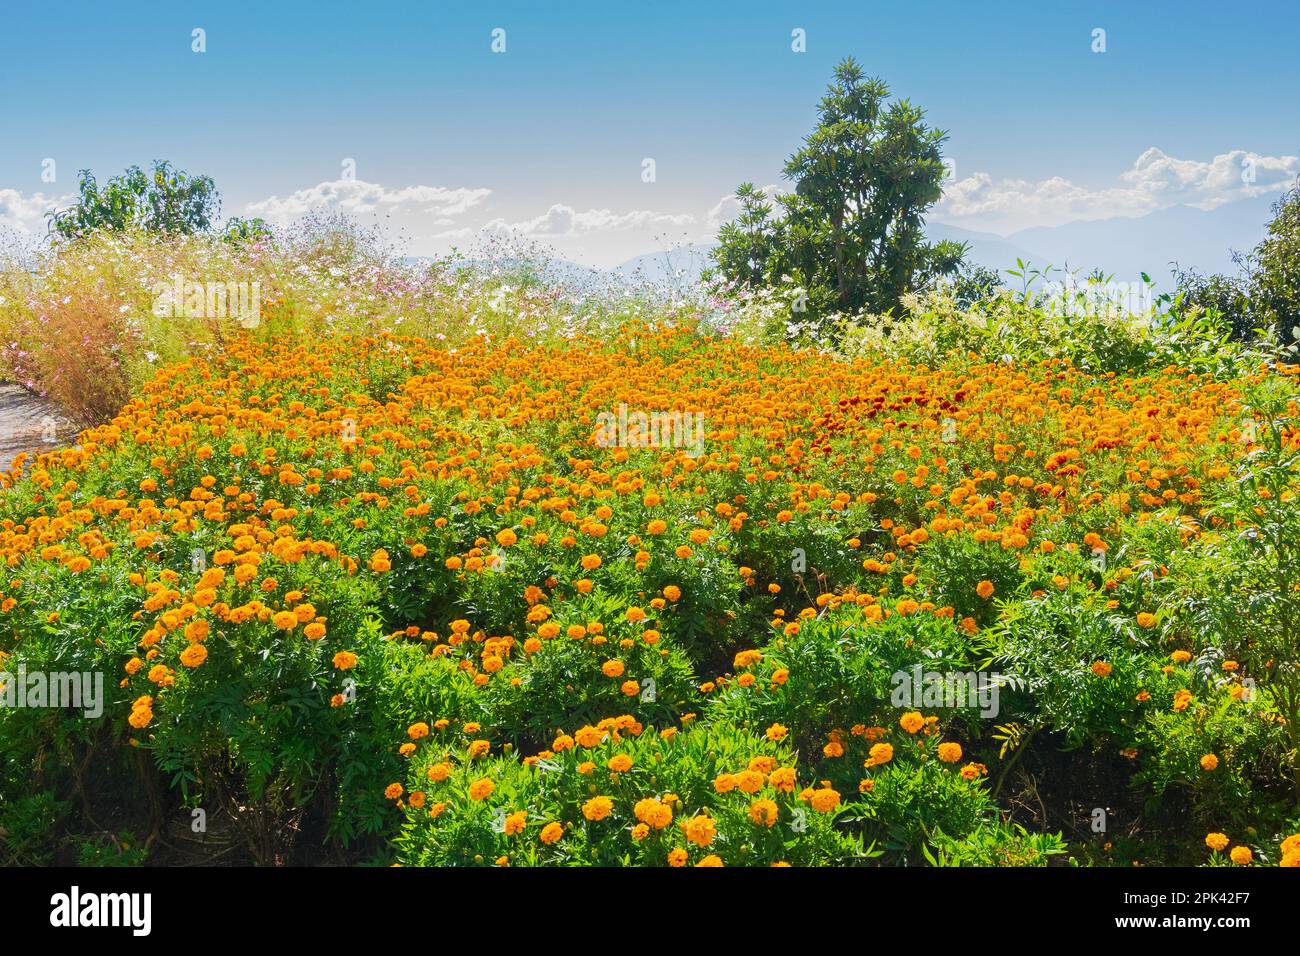 Tagetes , jardin fleuri de marigold. Belle vue latérale sur le monastère de Samdruptse avec montagnes de l'Himalaya en arrière-plan. Sikkim, Inde. Banque D'Images